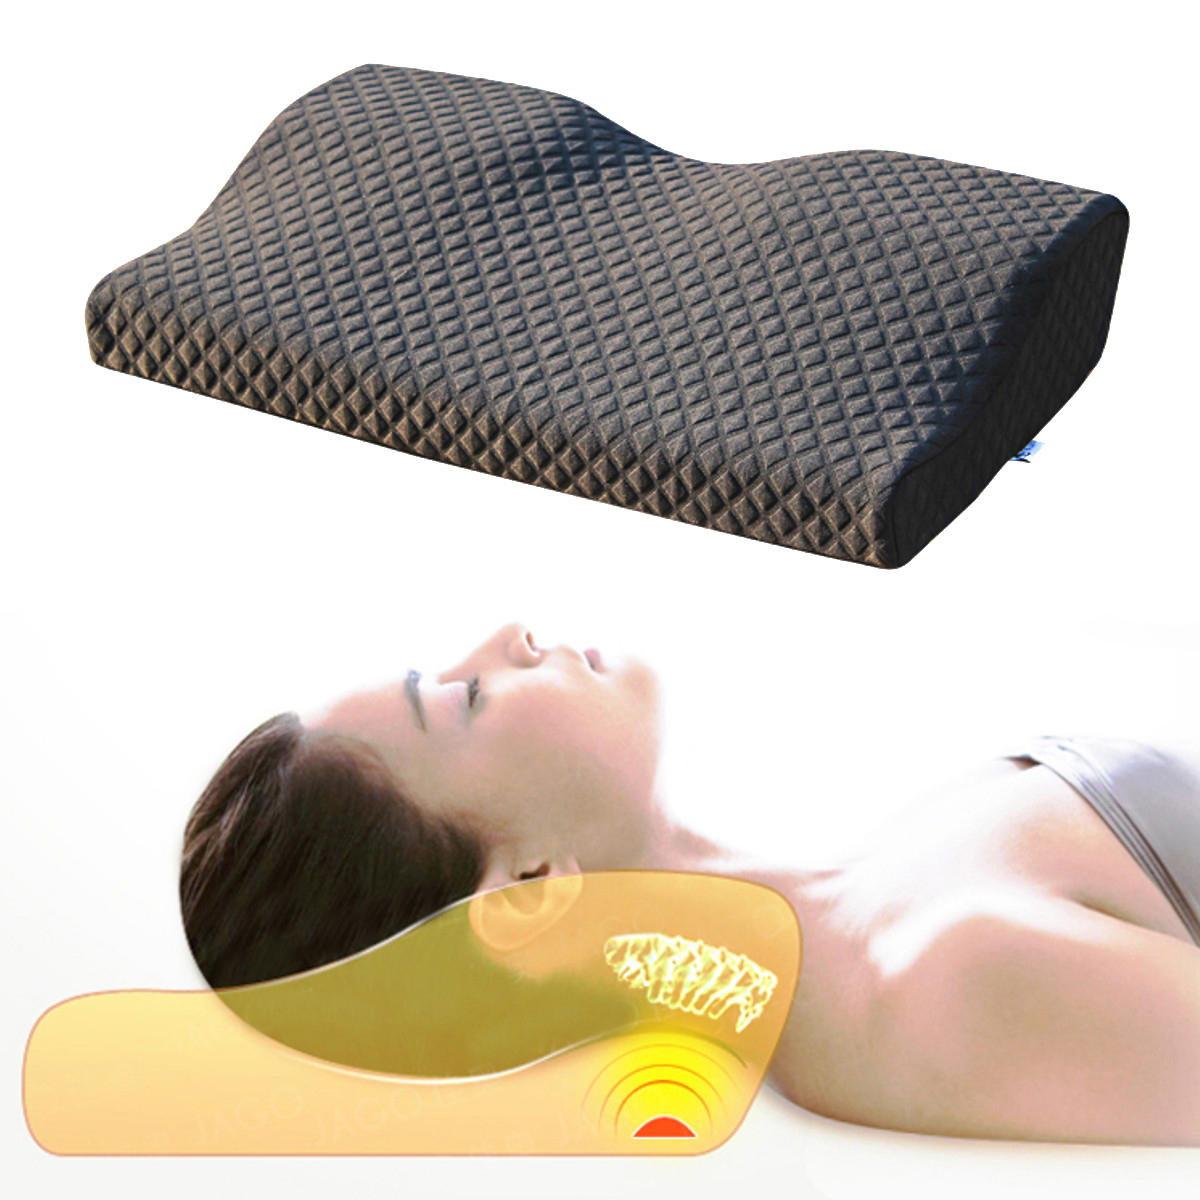 Какую подушку купить при остеохондрозе. Массажная подушка cervical massage Pillow. Подушка Gravity Neck Pillow. Ортопедическая подушка с выемкой для шеи. Ортопедические подушки для сна при остеохондрозе.